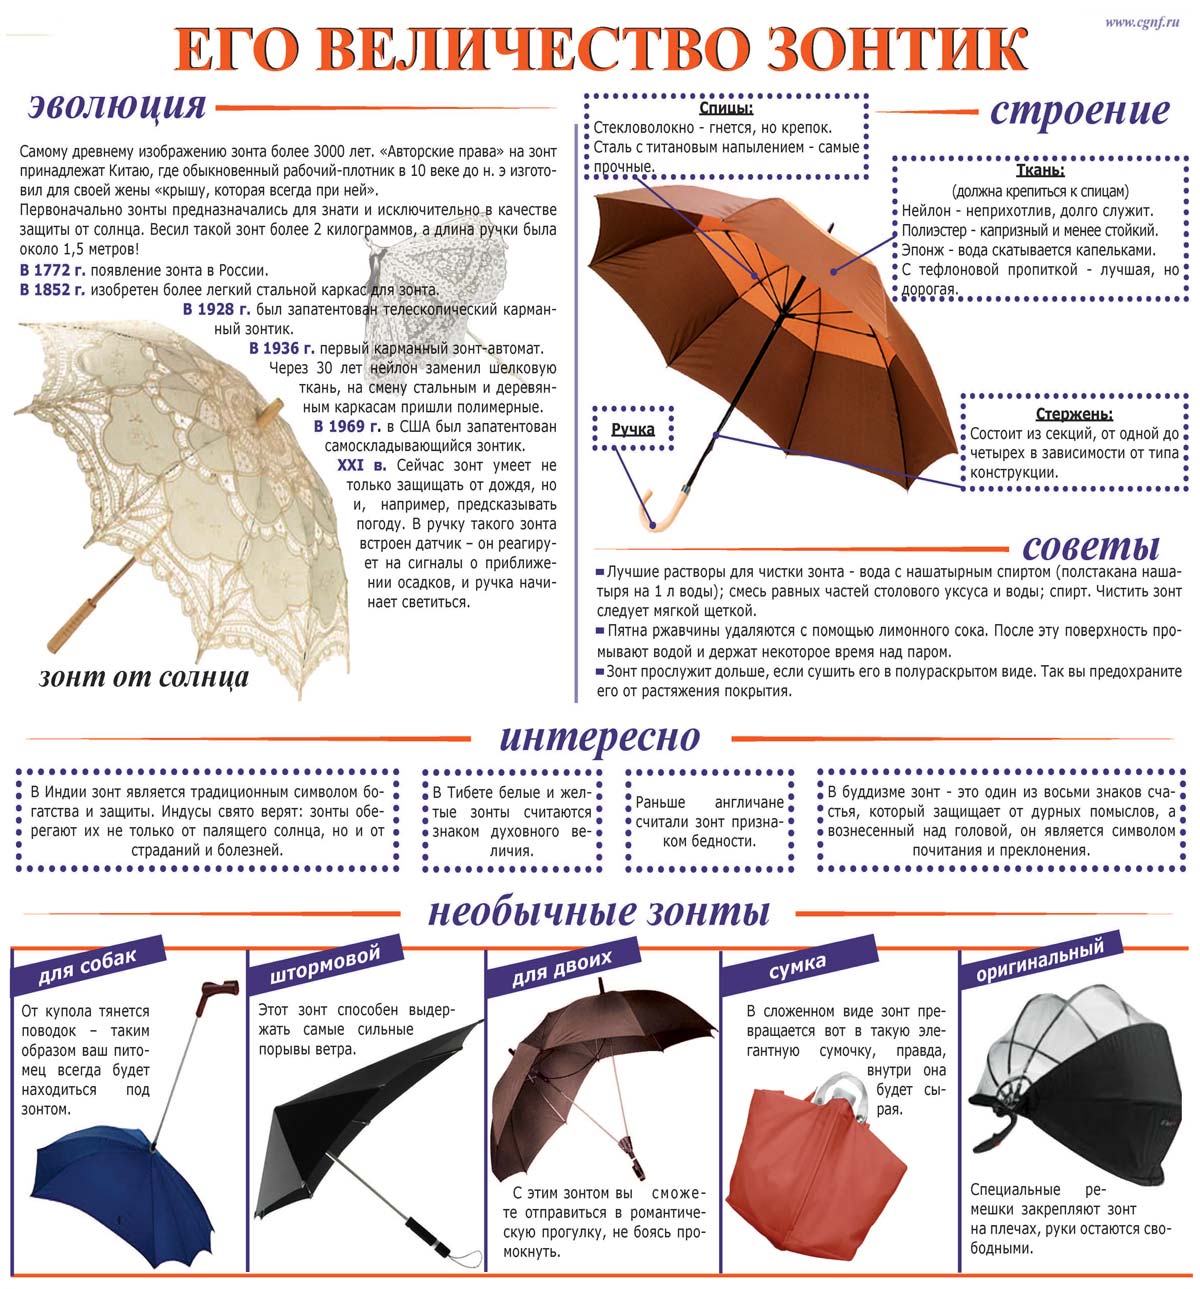 Роль зонтика. Из чего состоит зонт. Строение зонтика. Названия частей зонтика. Детали зонтика.